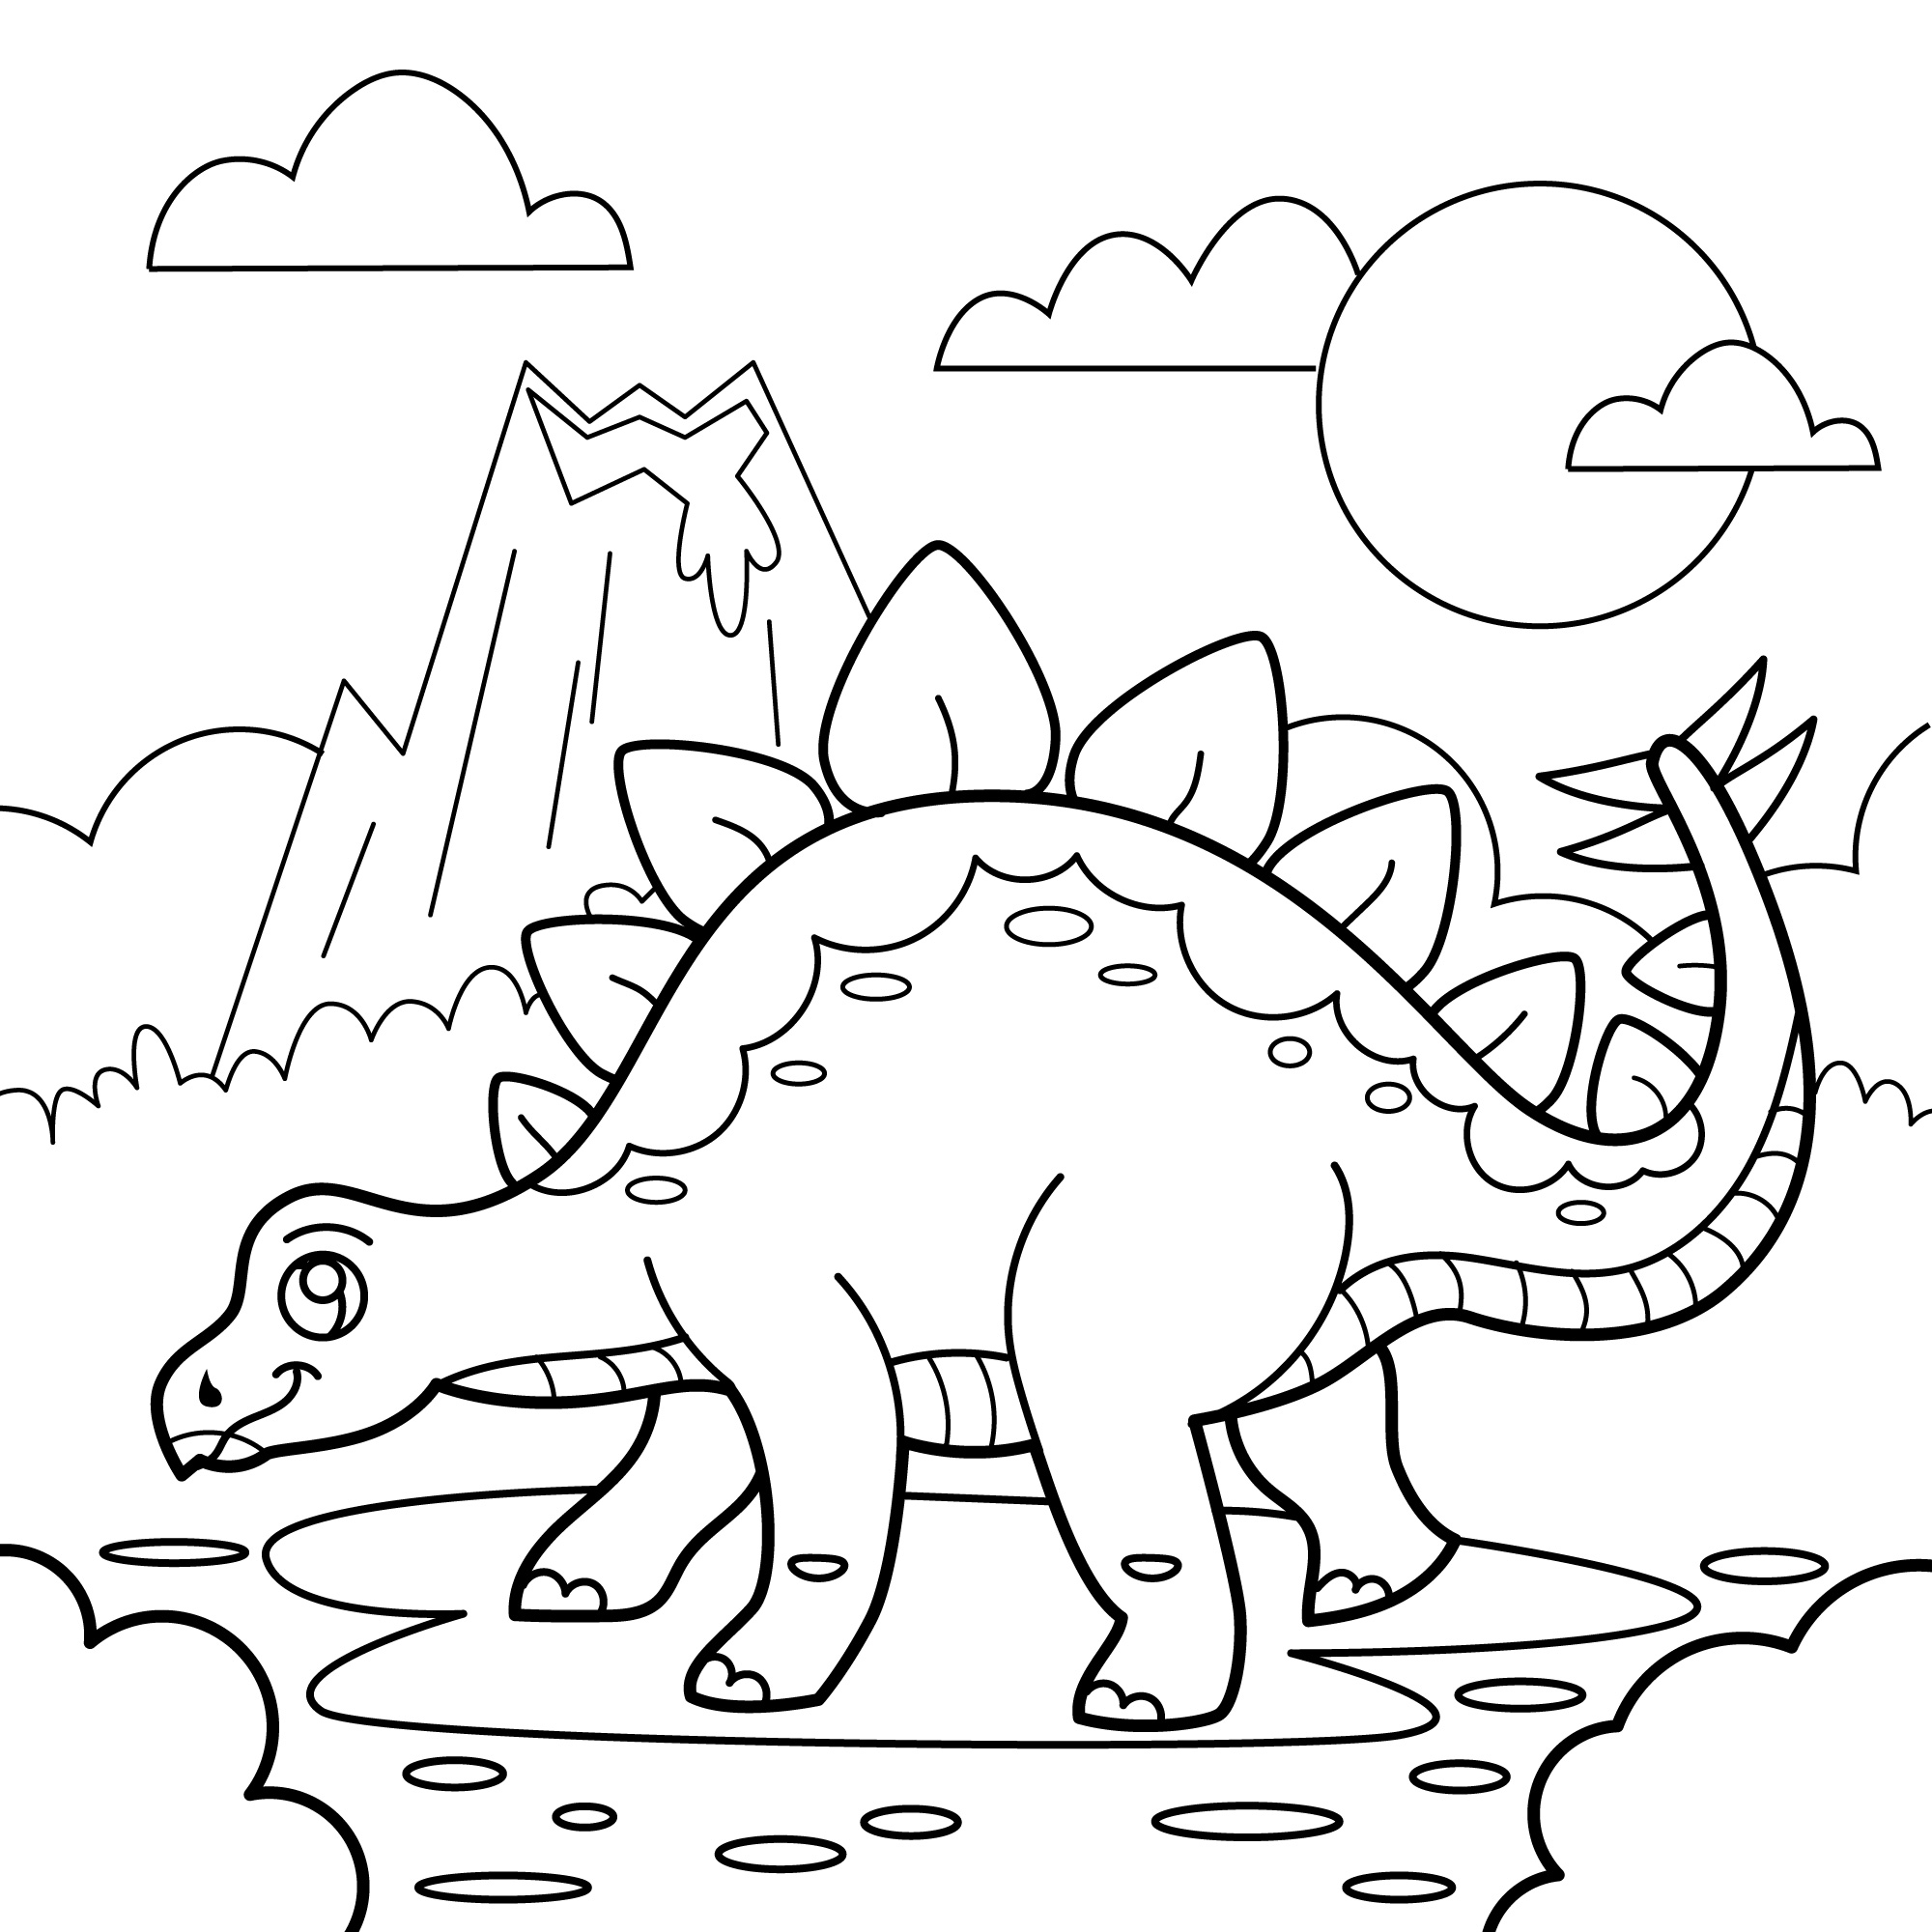 Раскраска динозавр стегозавр на поляне формата А4 в высоком качестве